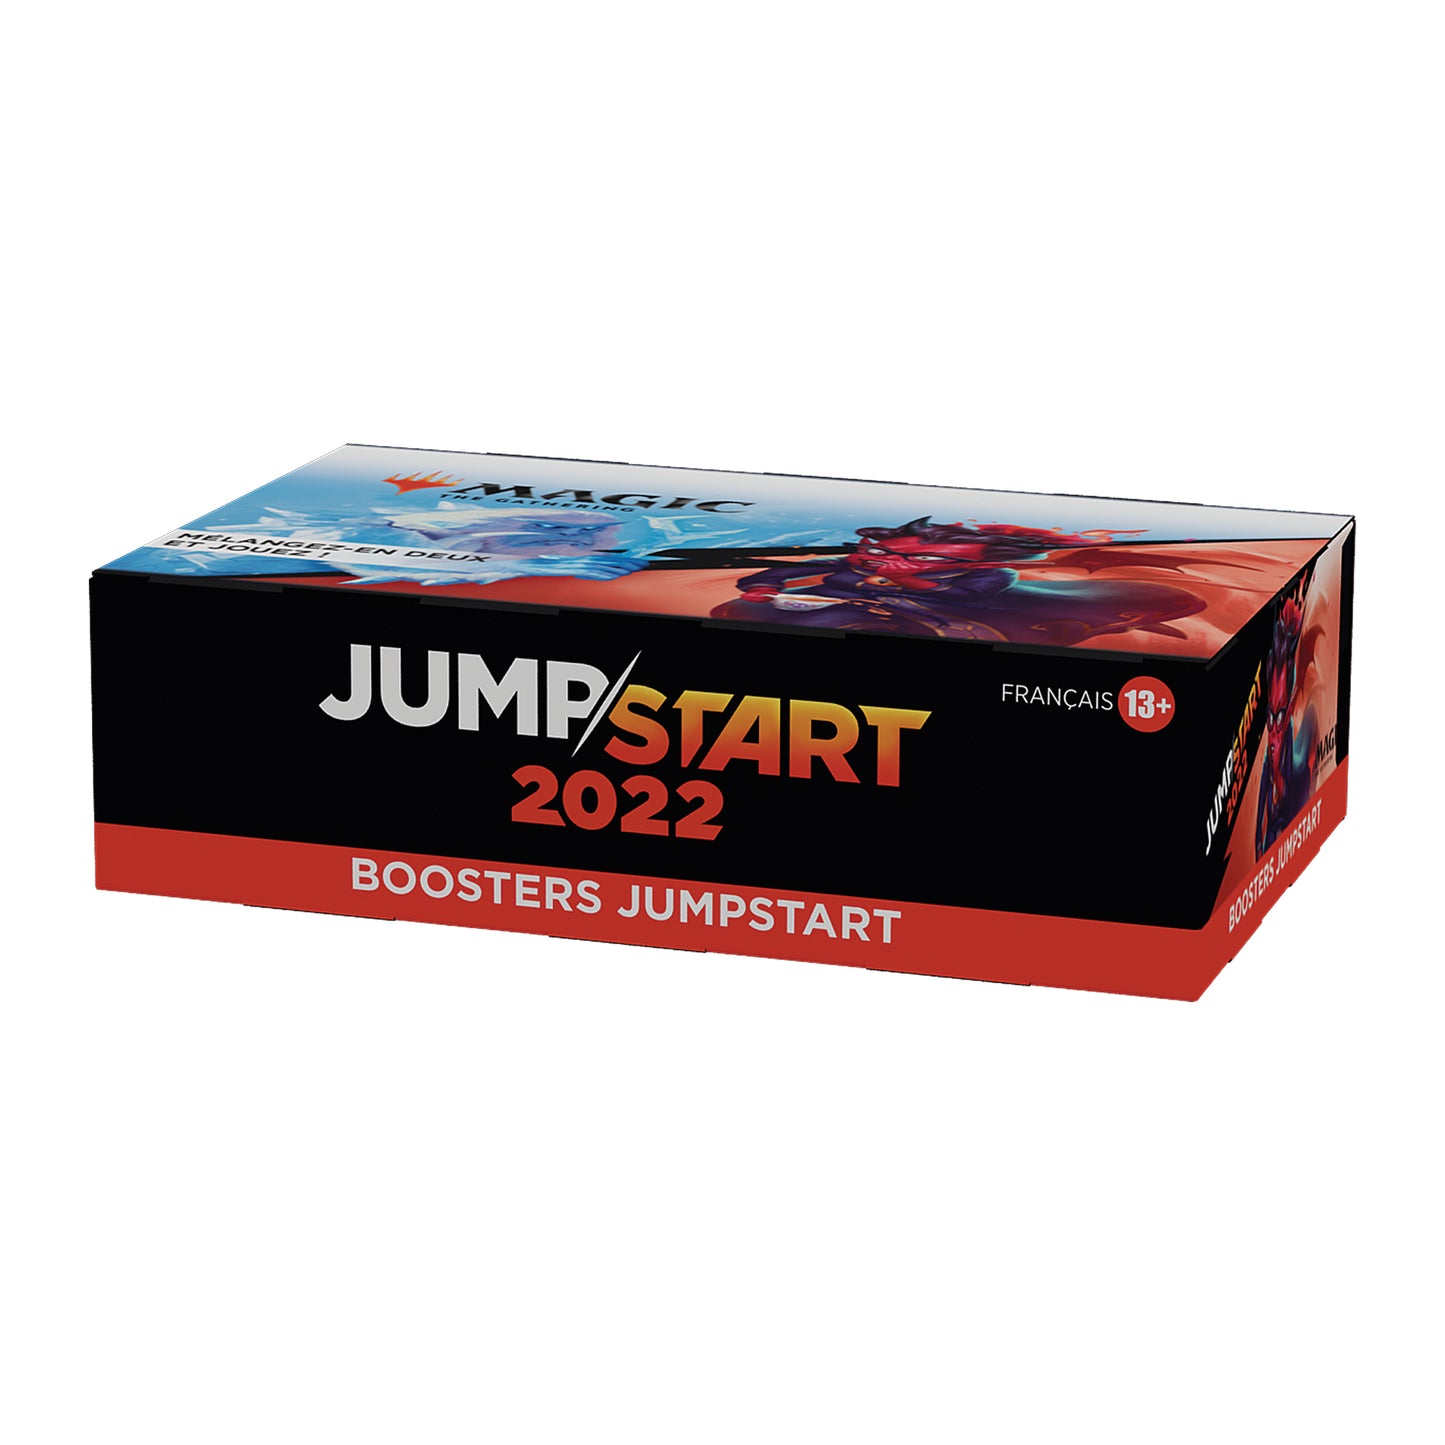 Sammelkarten - Jumpstart Booster - Jumpstart - Magic The Gathering - 2022 - Booster Box